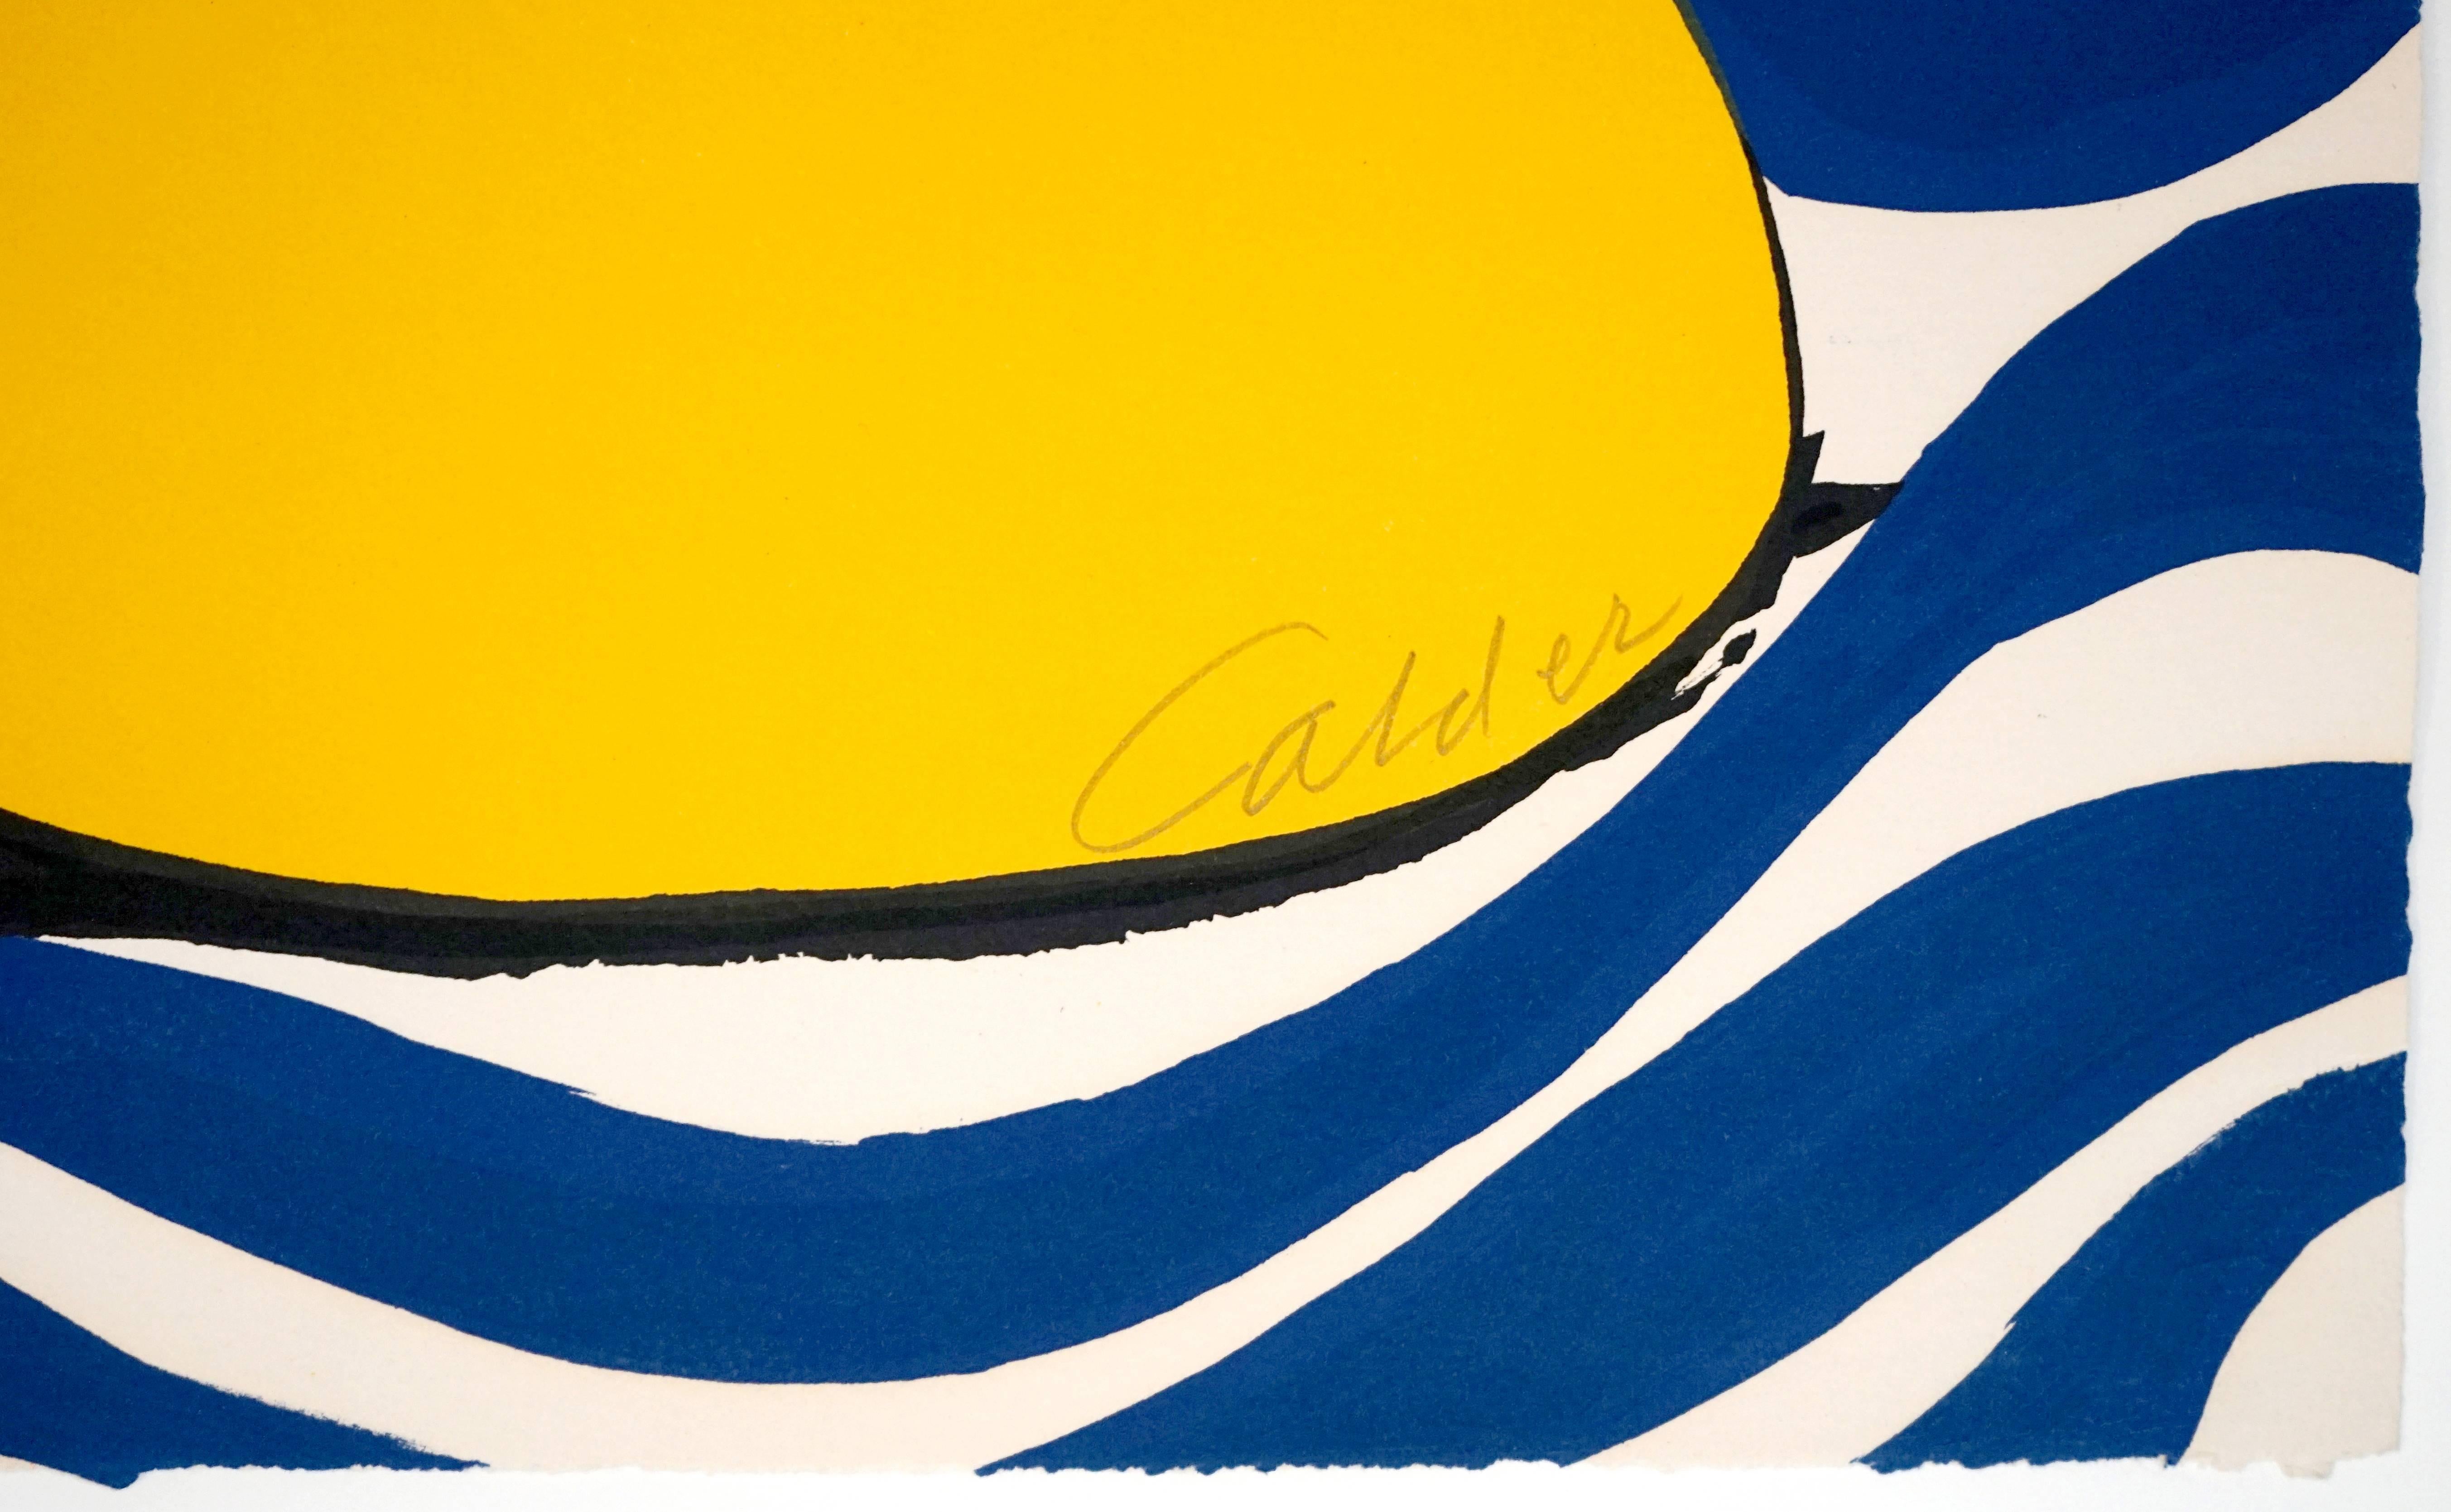 Circles and Waves - Print by Alexander Calder